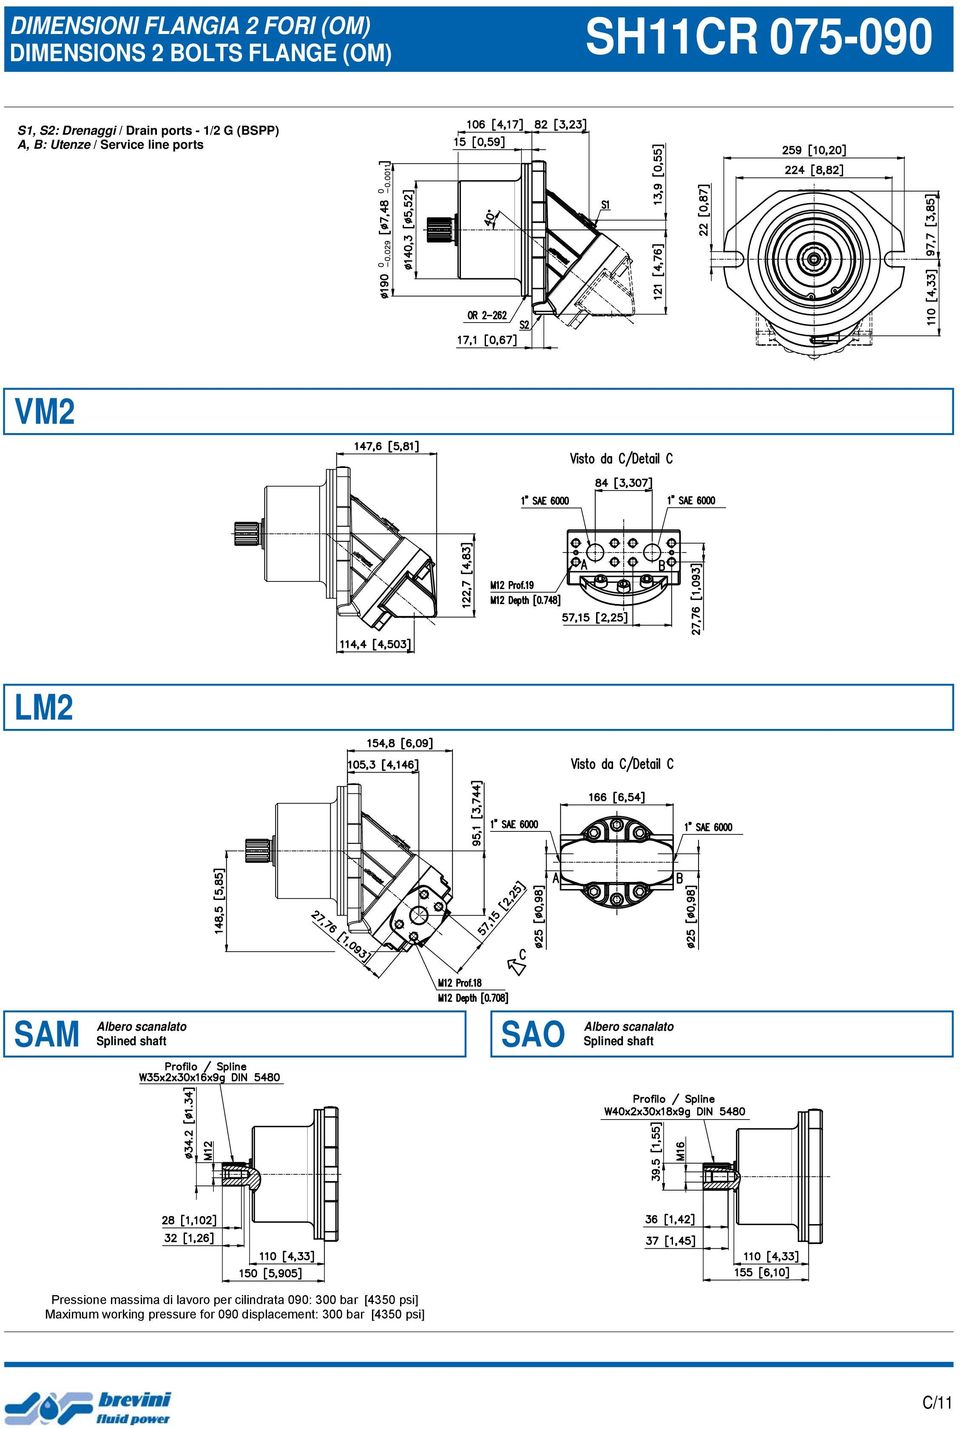 Service line ports SAM SAO Pressione massima di lavoro per cilindrata 090: